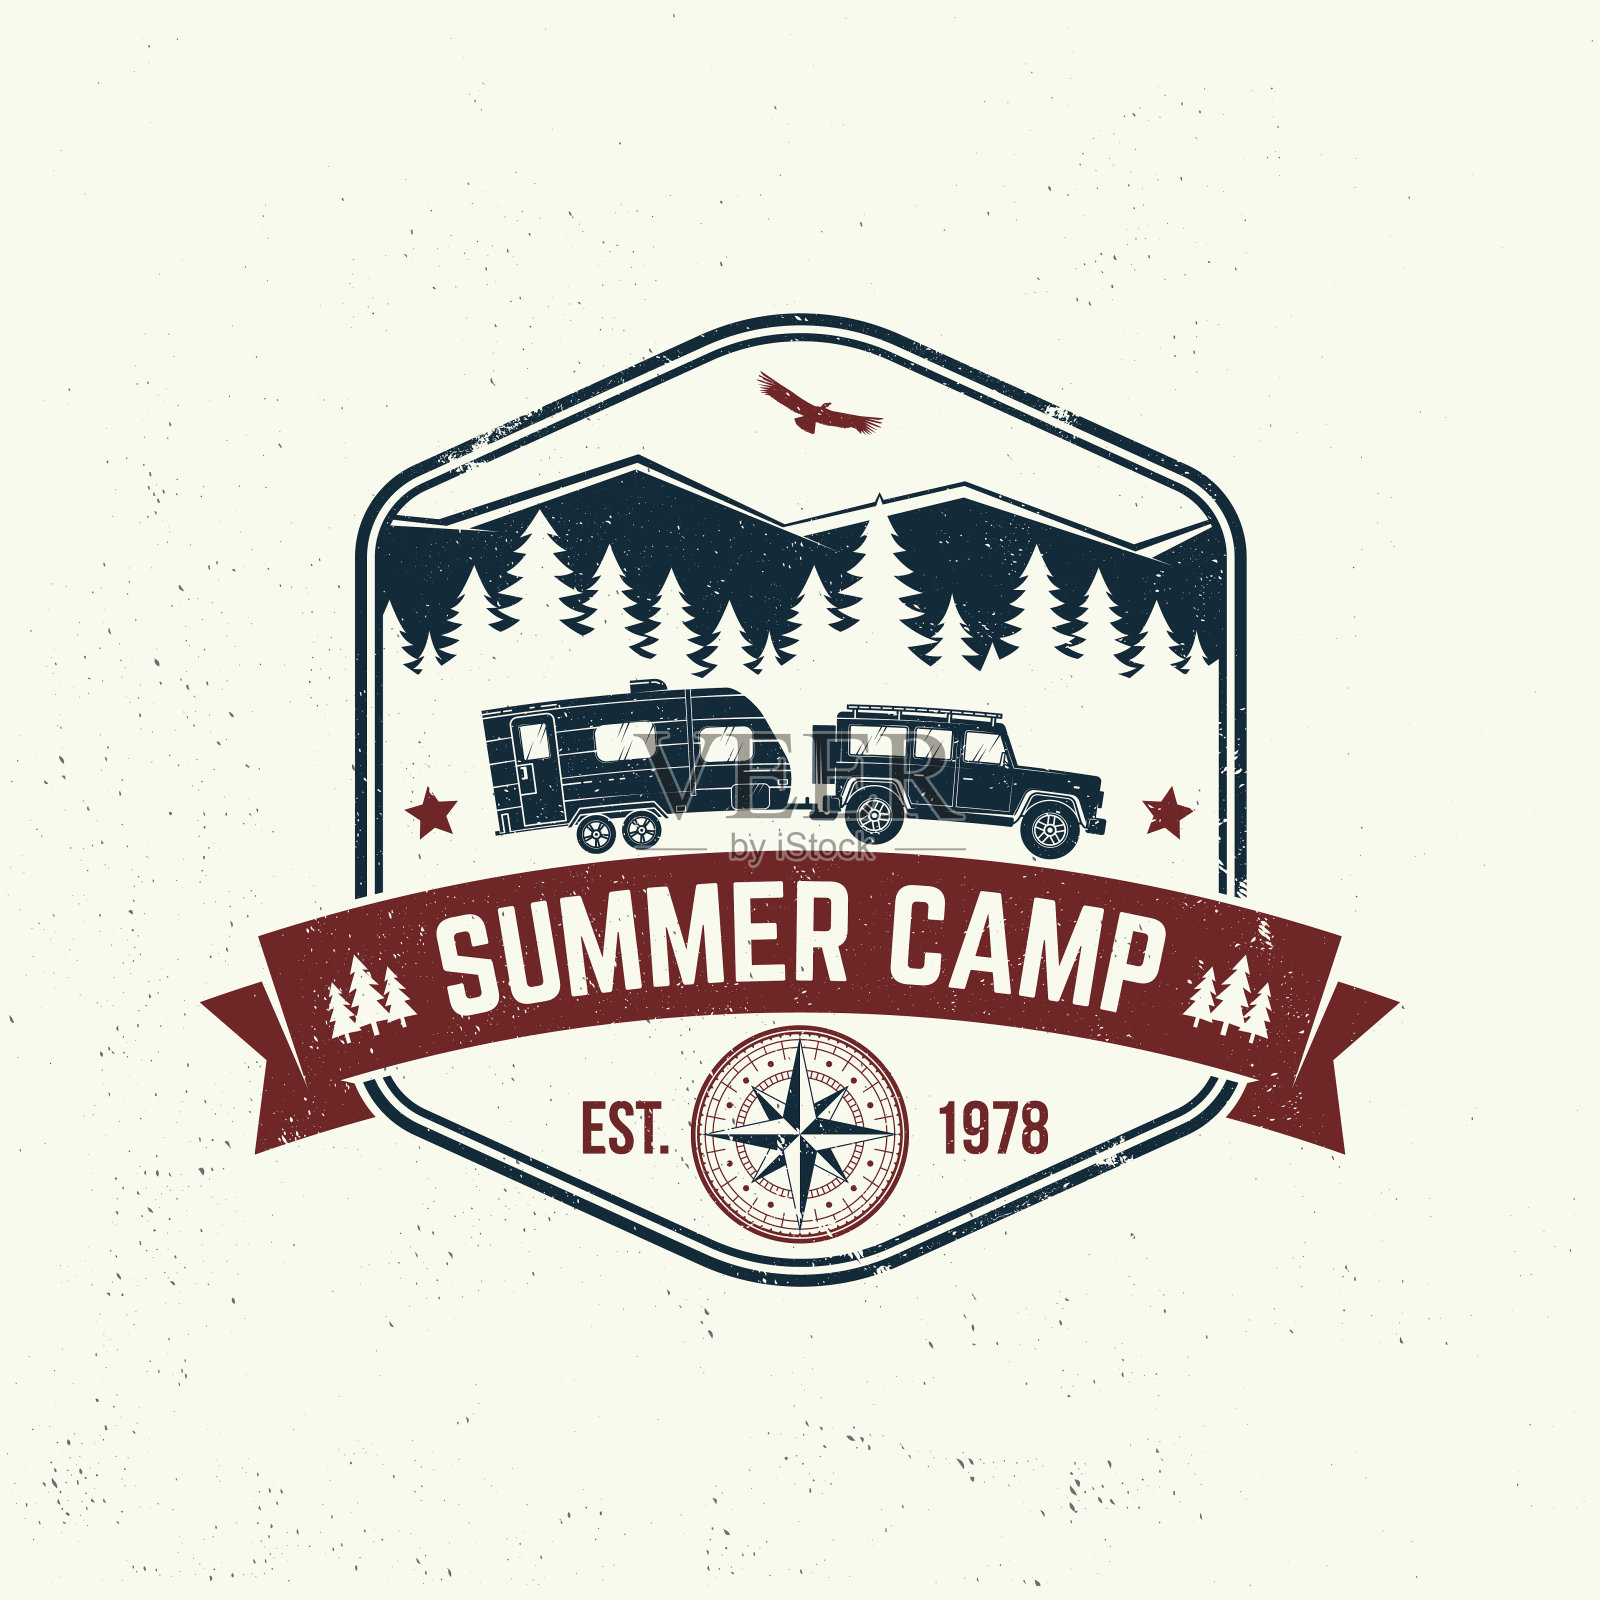 夏令营。向量。概念衬衫或标志，印刷，邮票或t恤。复古的排版设计与露营拖车，森林和山的轮廓。插画图片素材